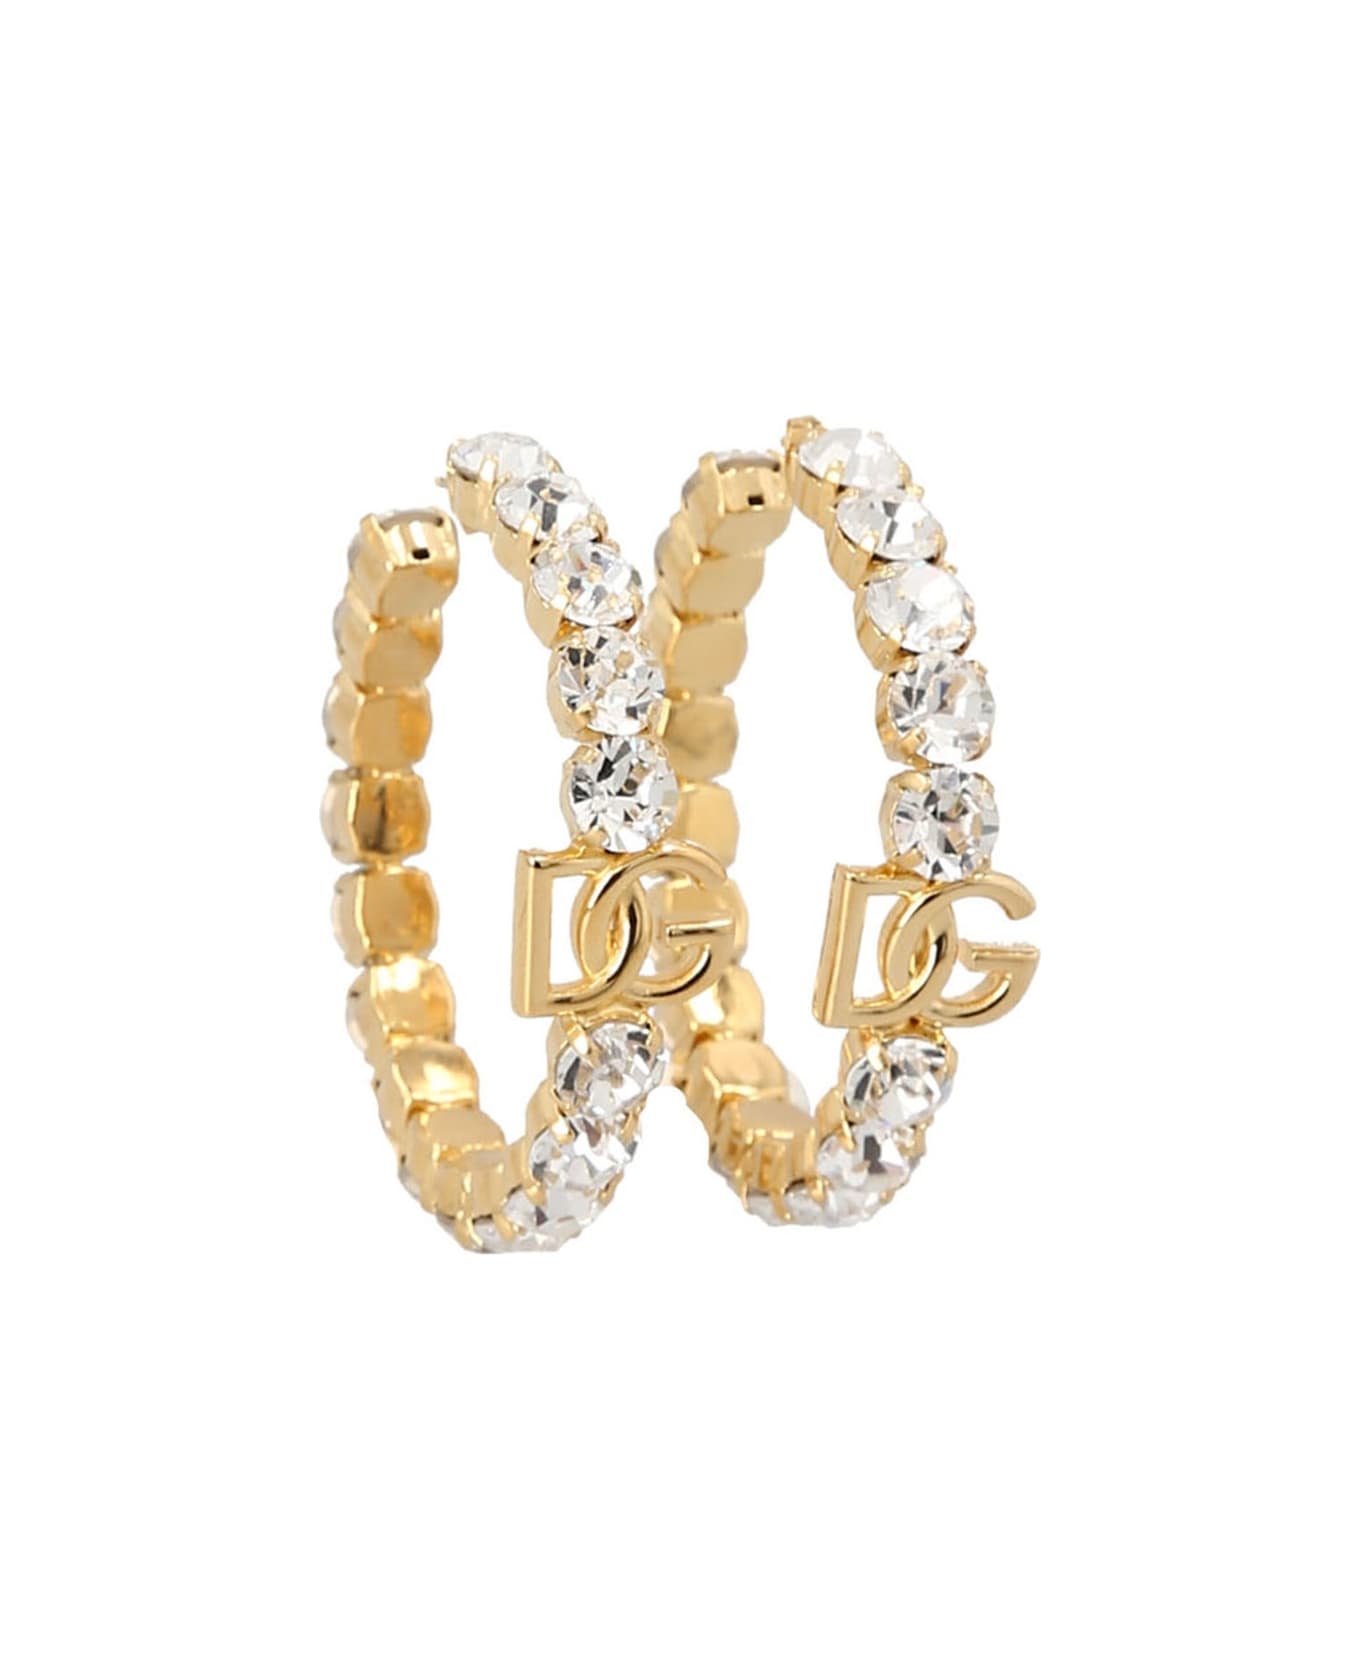 Dolce & Gabbana Diva Earrings - Gold